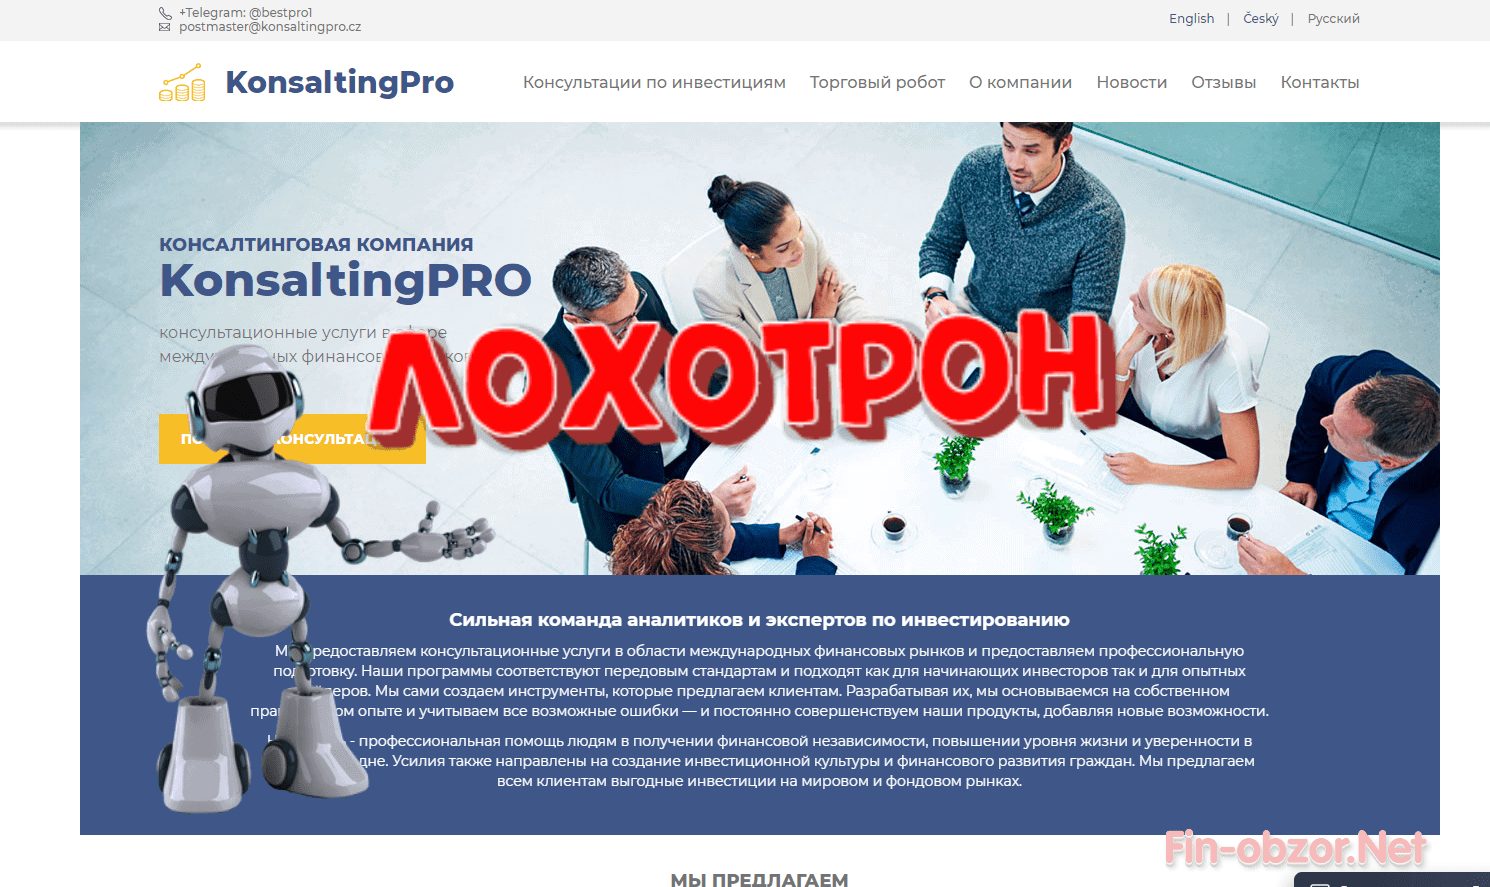 KonsaltingPro - обзор и отзывы о konsaltingpro.cz. Развод